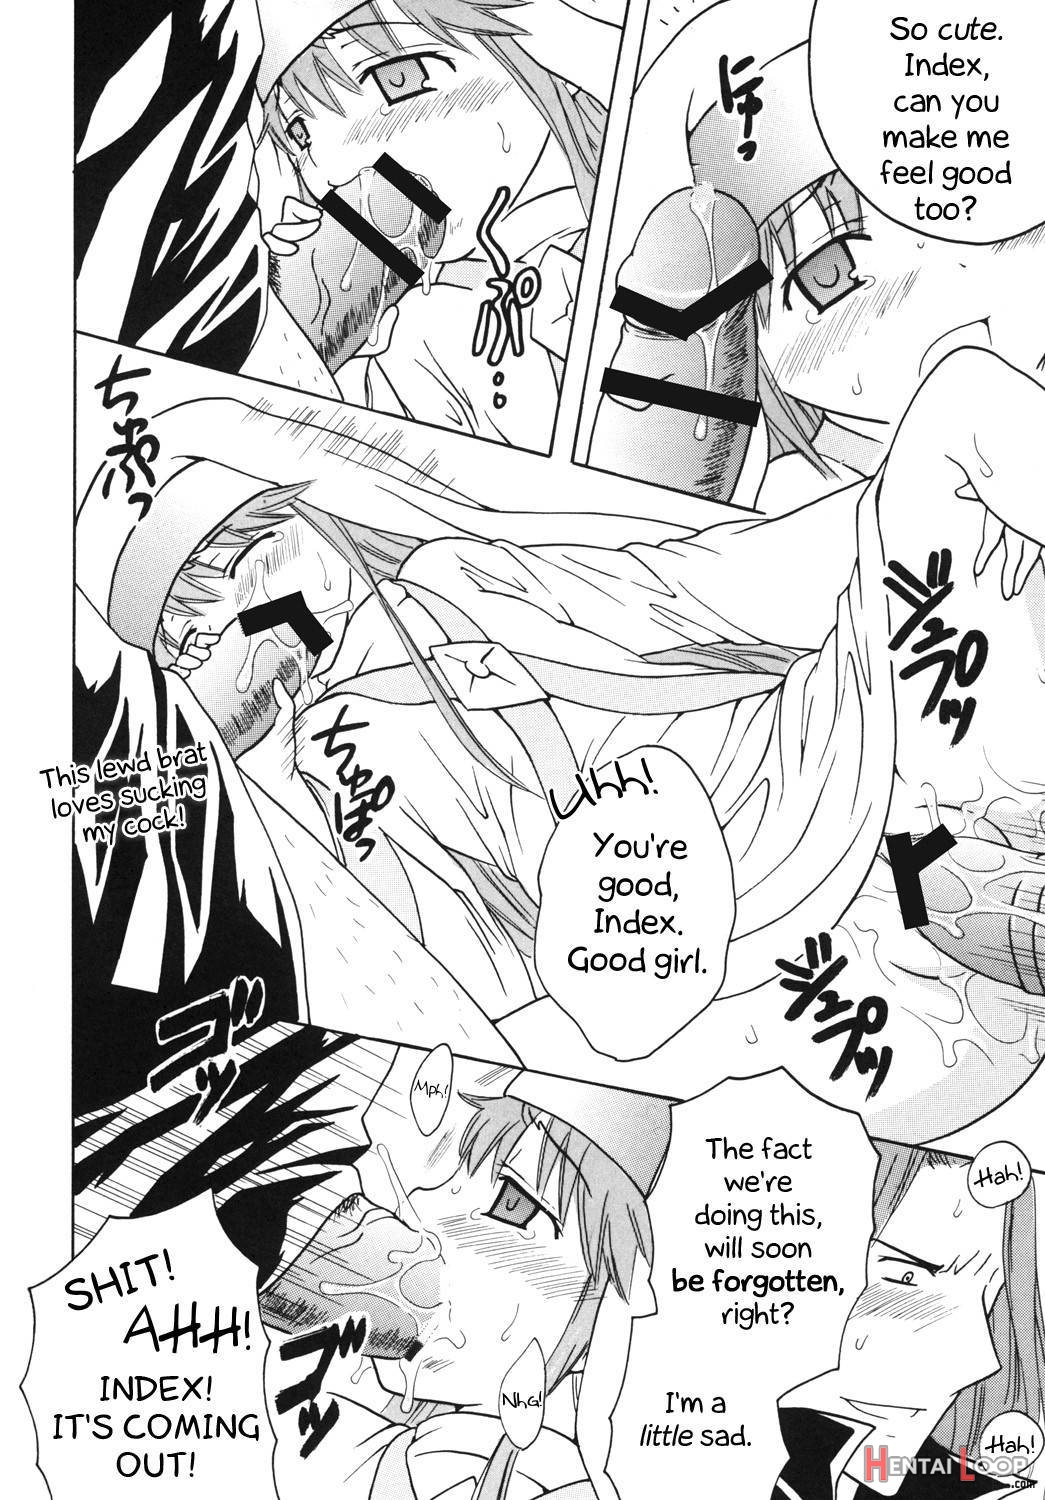 Toaru Otaku no Index #1 page 35